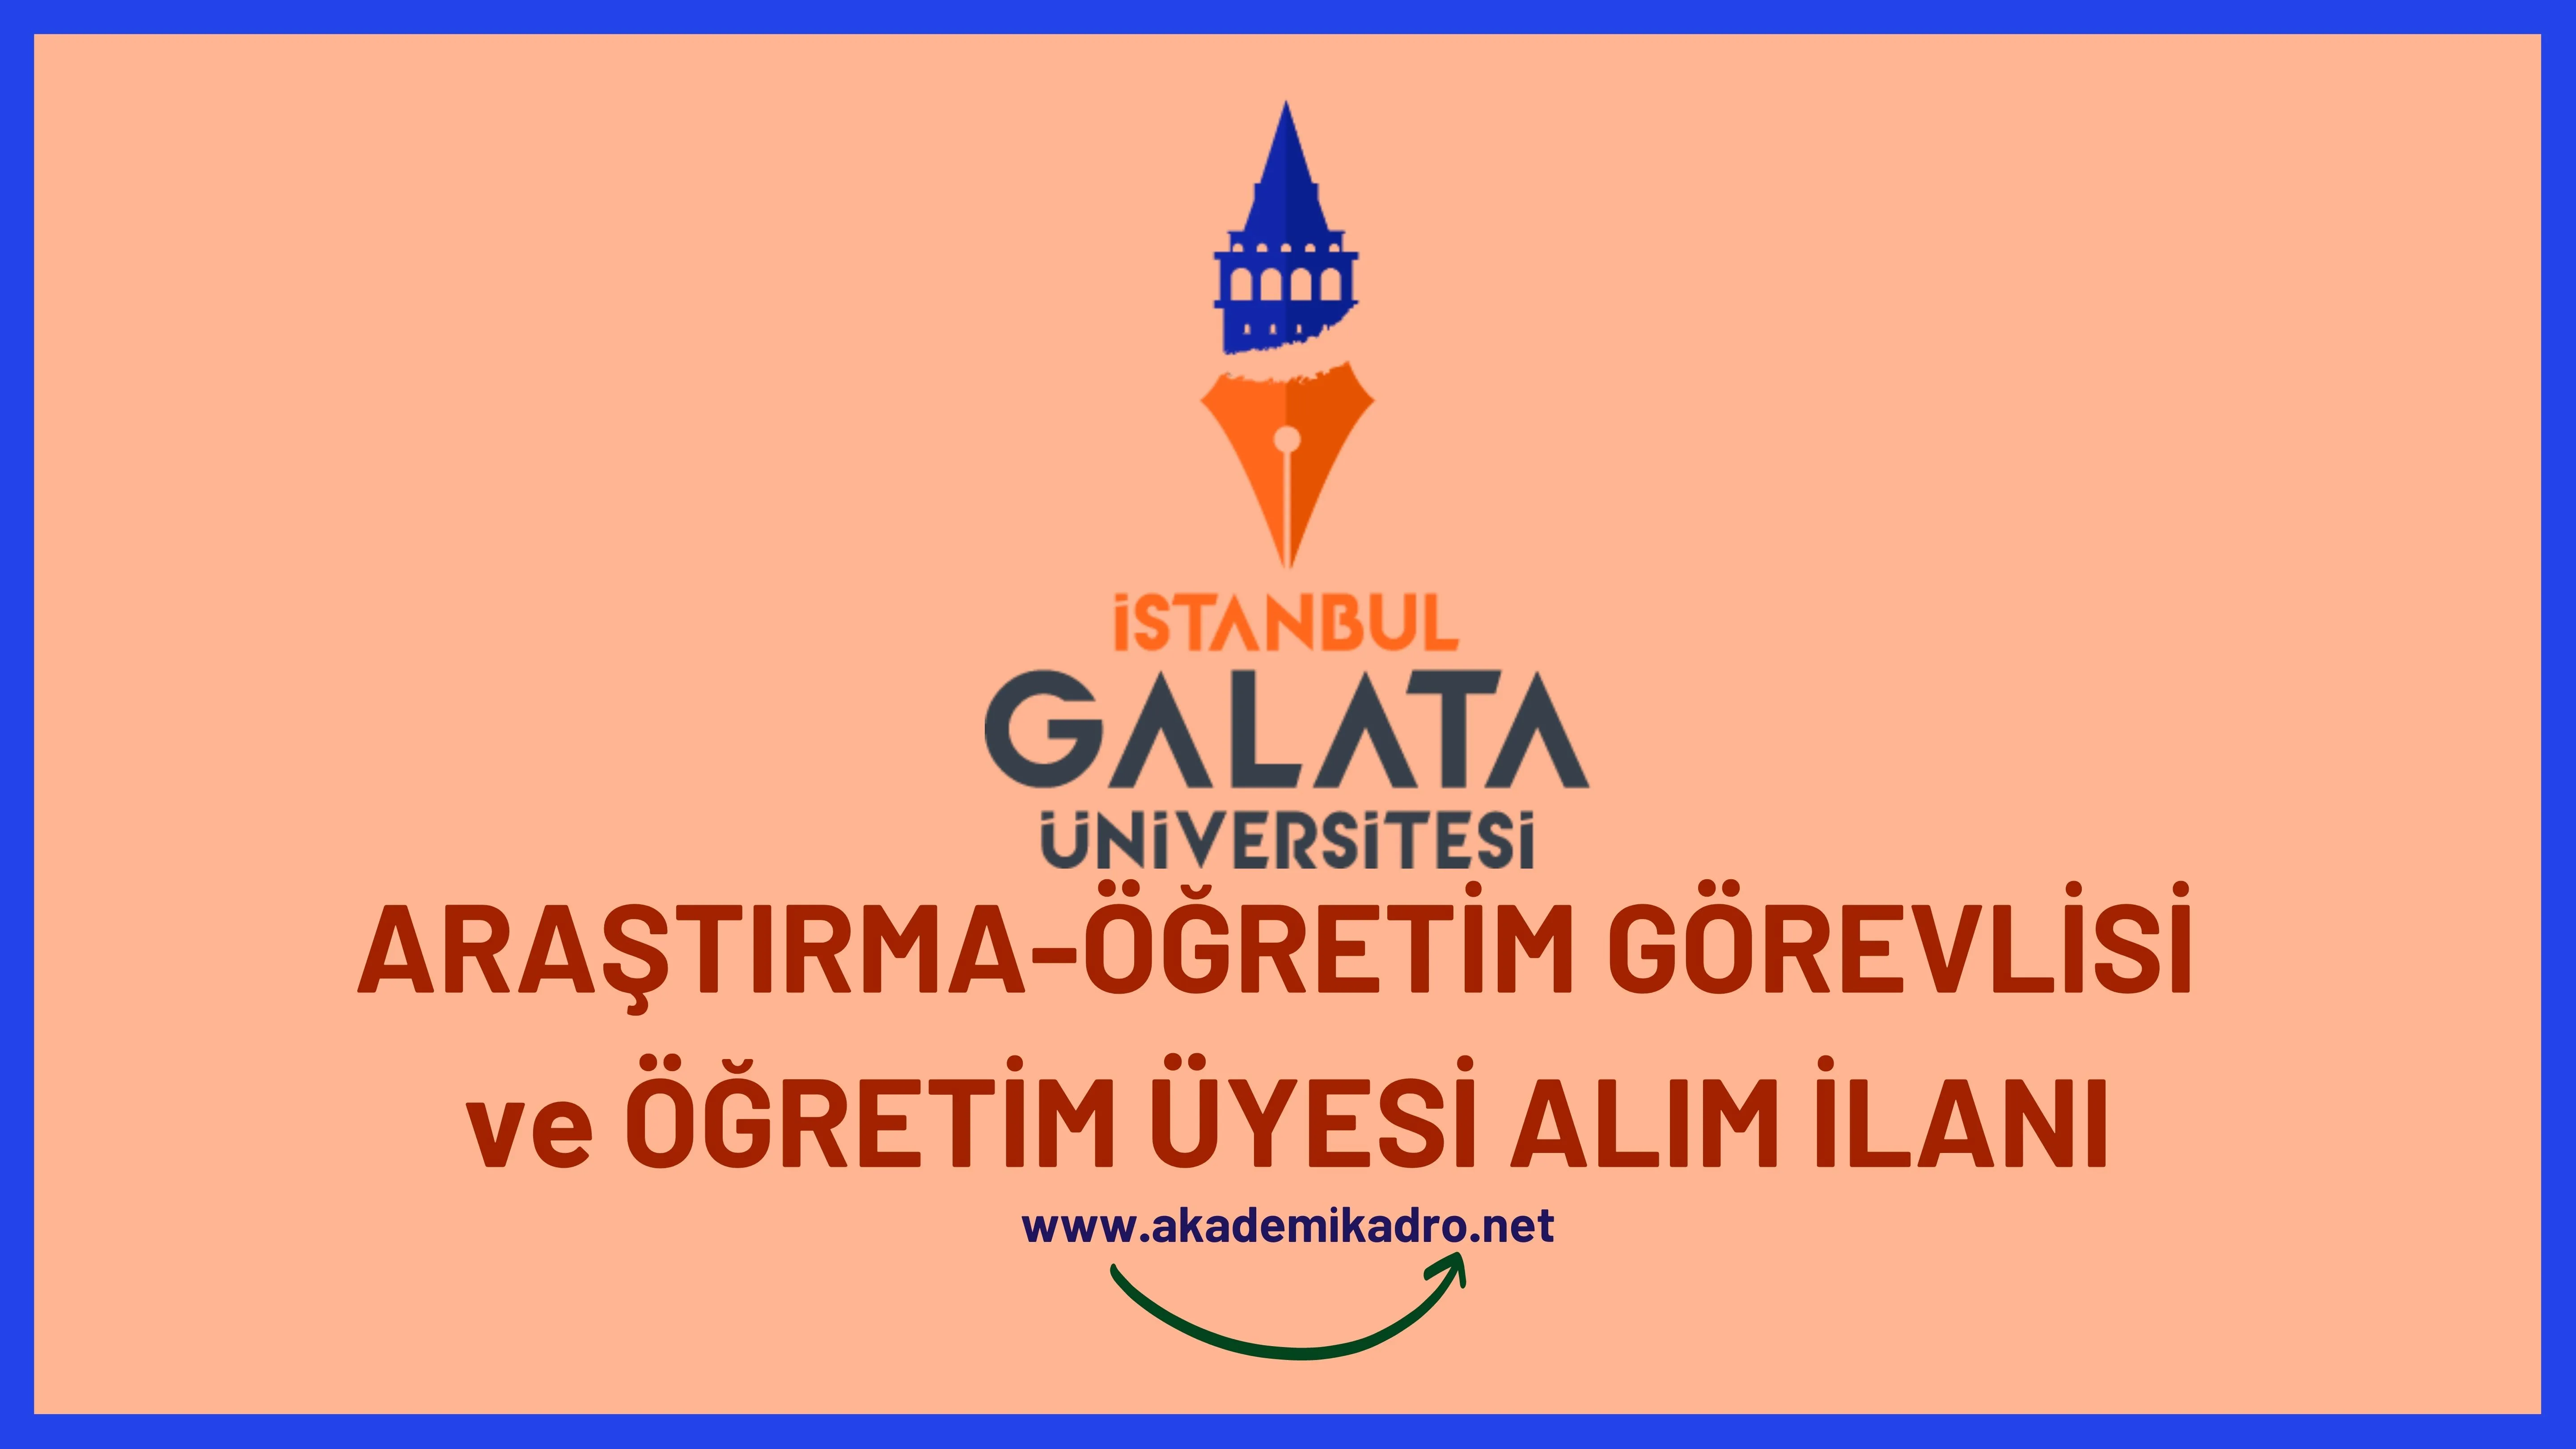 İstanbul Galata Üniversitesi Araştırma görevlisi, Öğretim görevlisi ve birçok alandan öğretim üyesi alacak. 